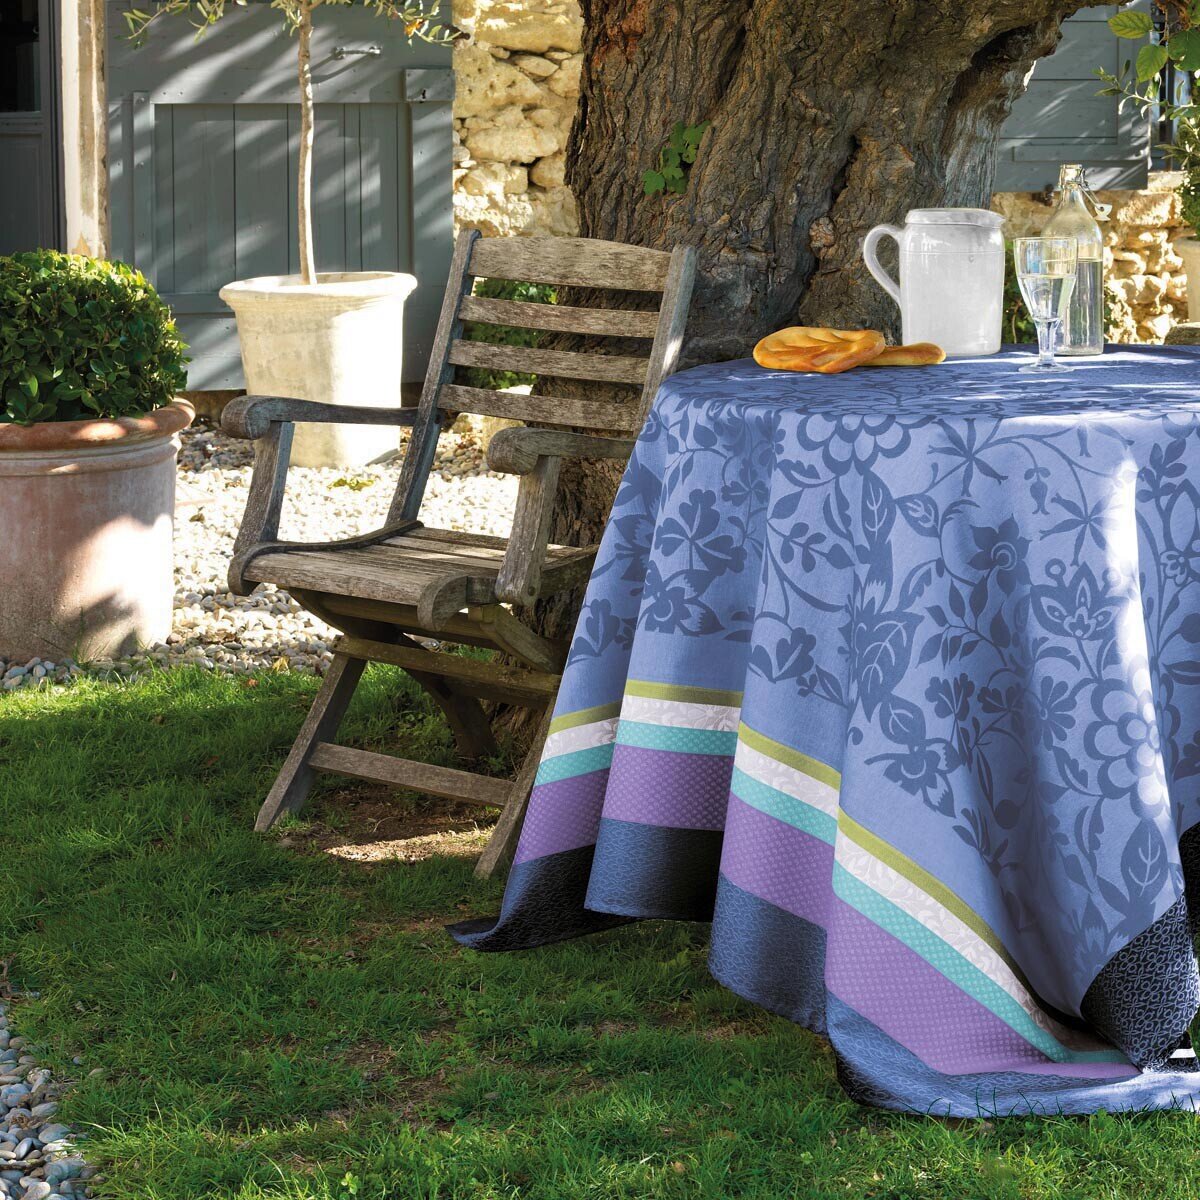 Le Jacquard Francais Provence Enduite Lavender blue Coated tablecloth 69 x 126 Inch